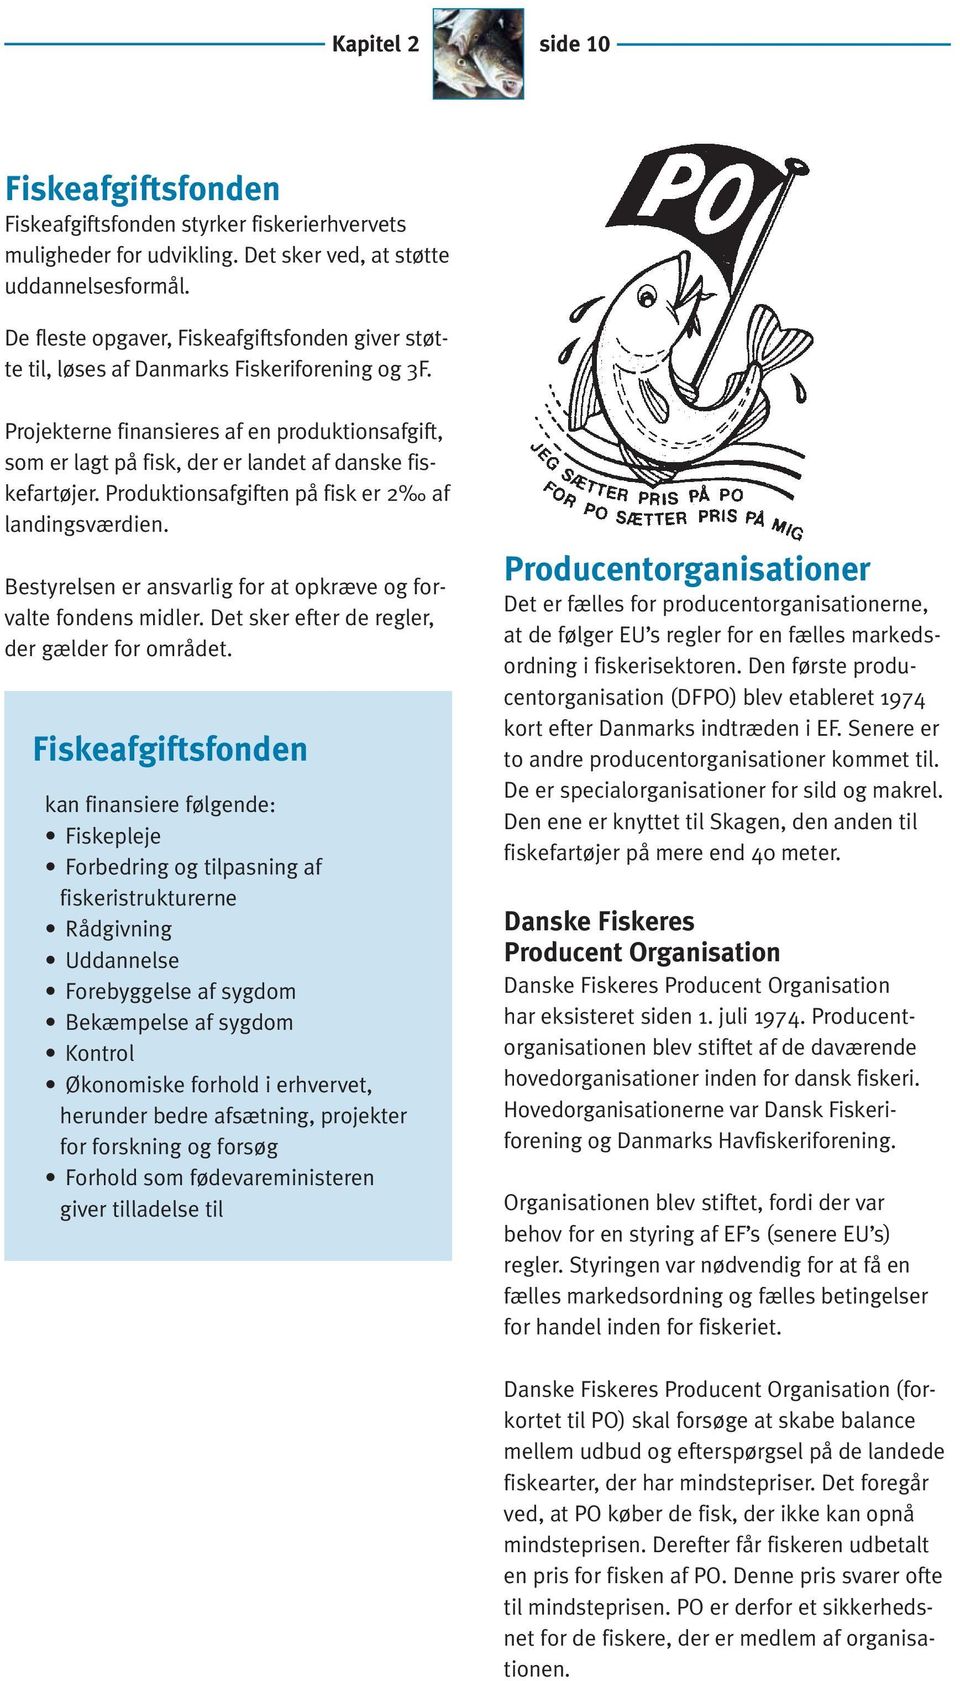 Projekterne finansieres af en produktionsafgift, som er lagt på fisk, der er landet af danske fiskefartøjer. Produktionsafgiften på fisk er 2 af landingsværdien.